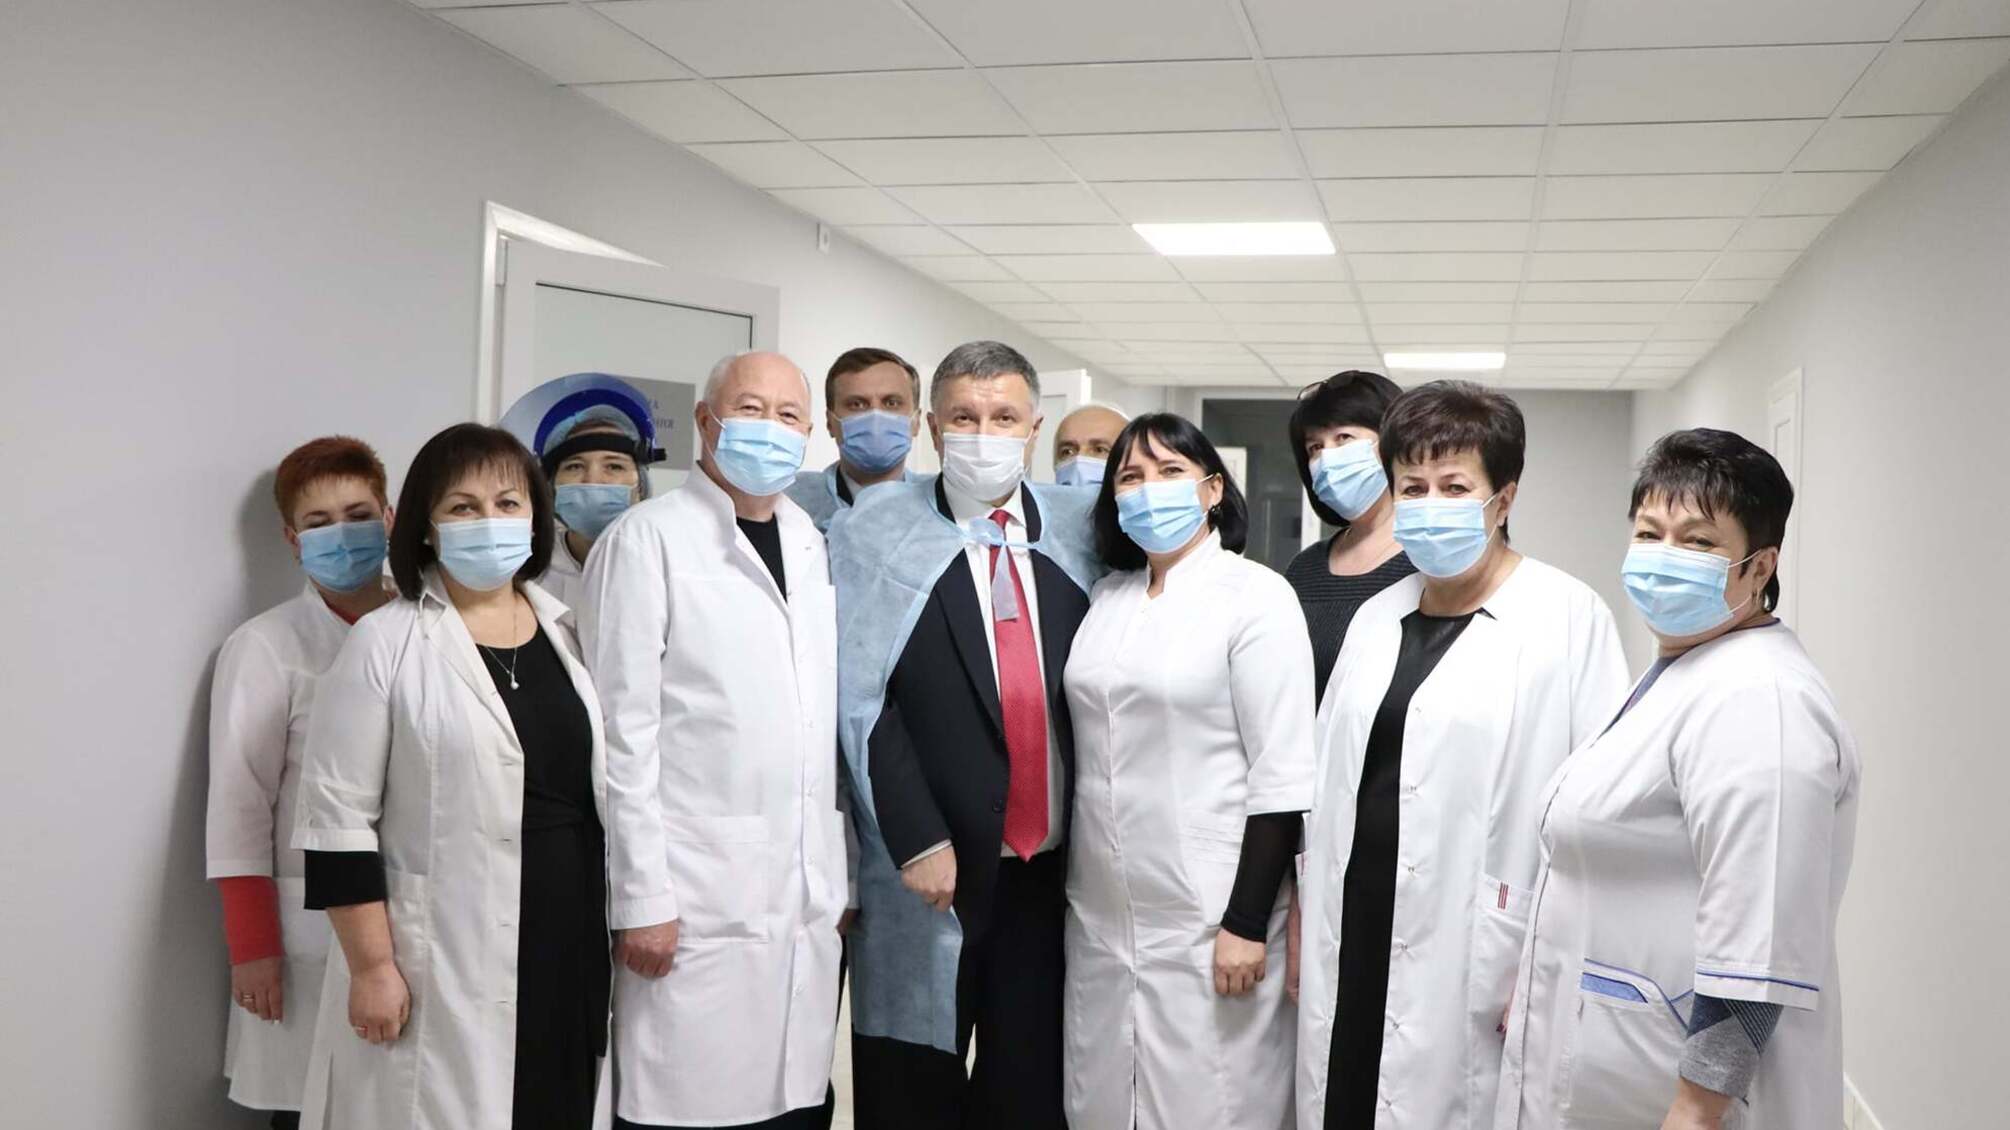 Міністр внутрішніх справ проінспектував роботу відомчого медичного закладу у Харкові